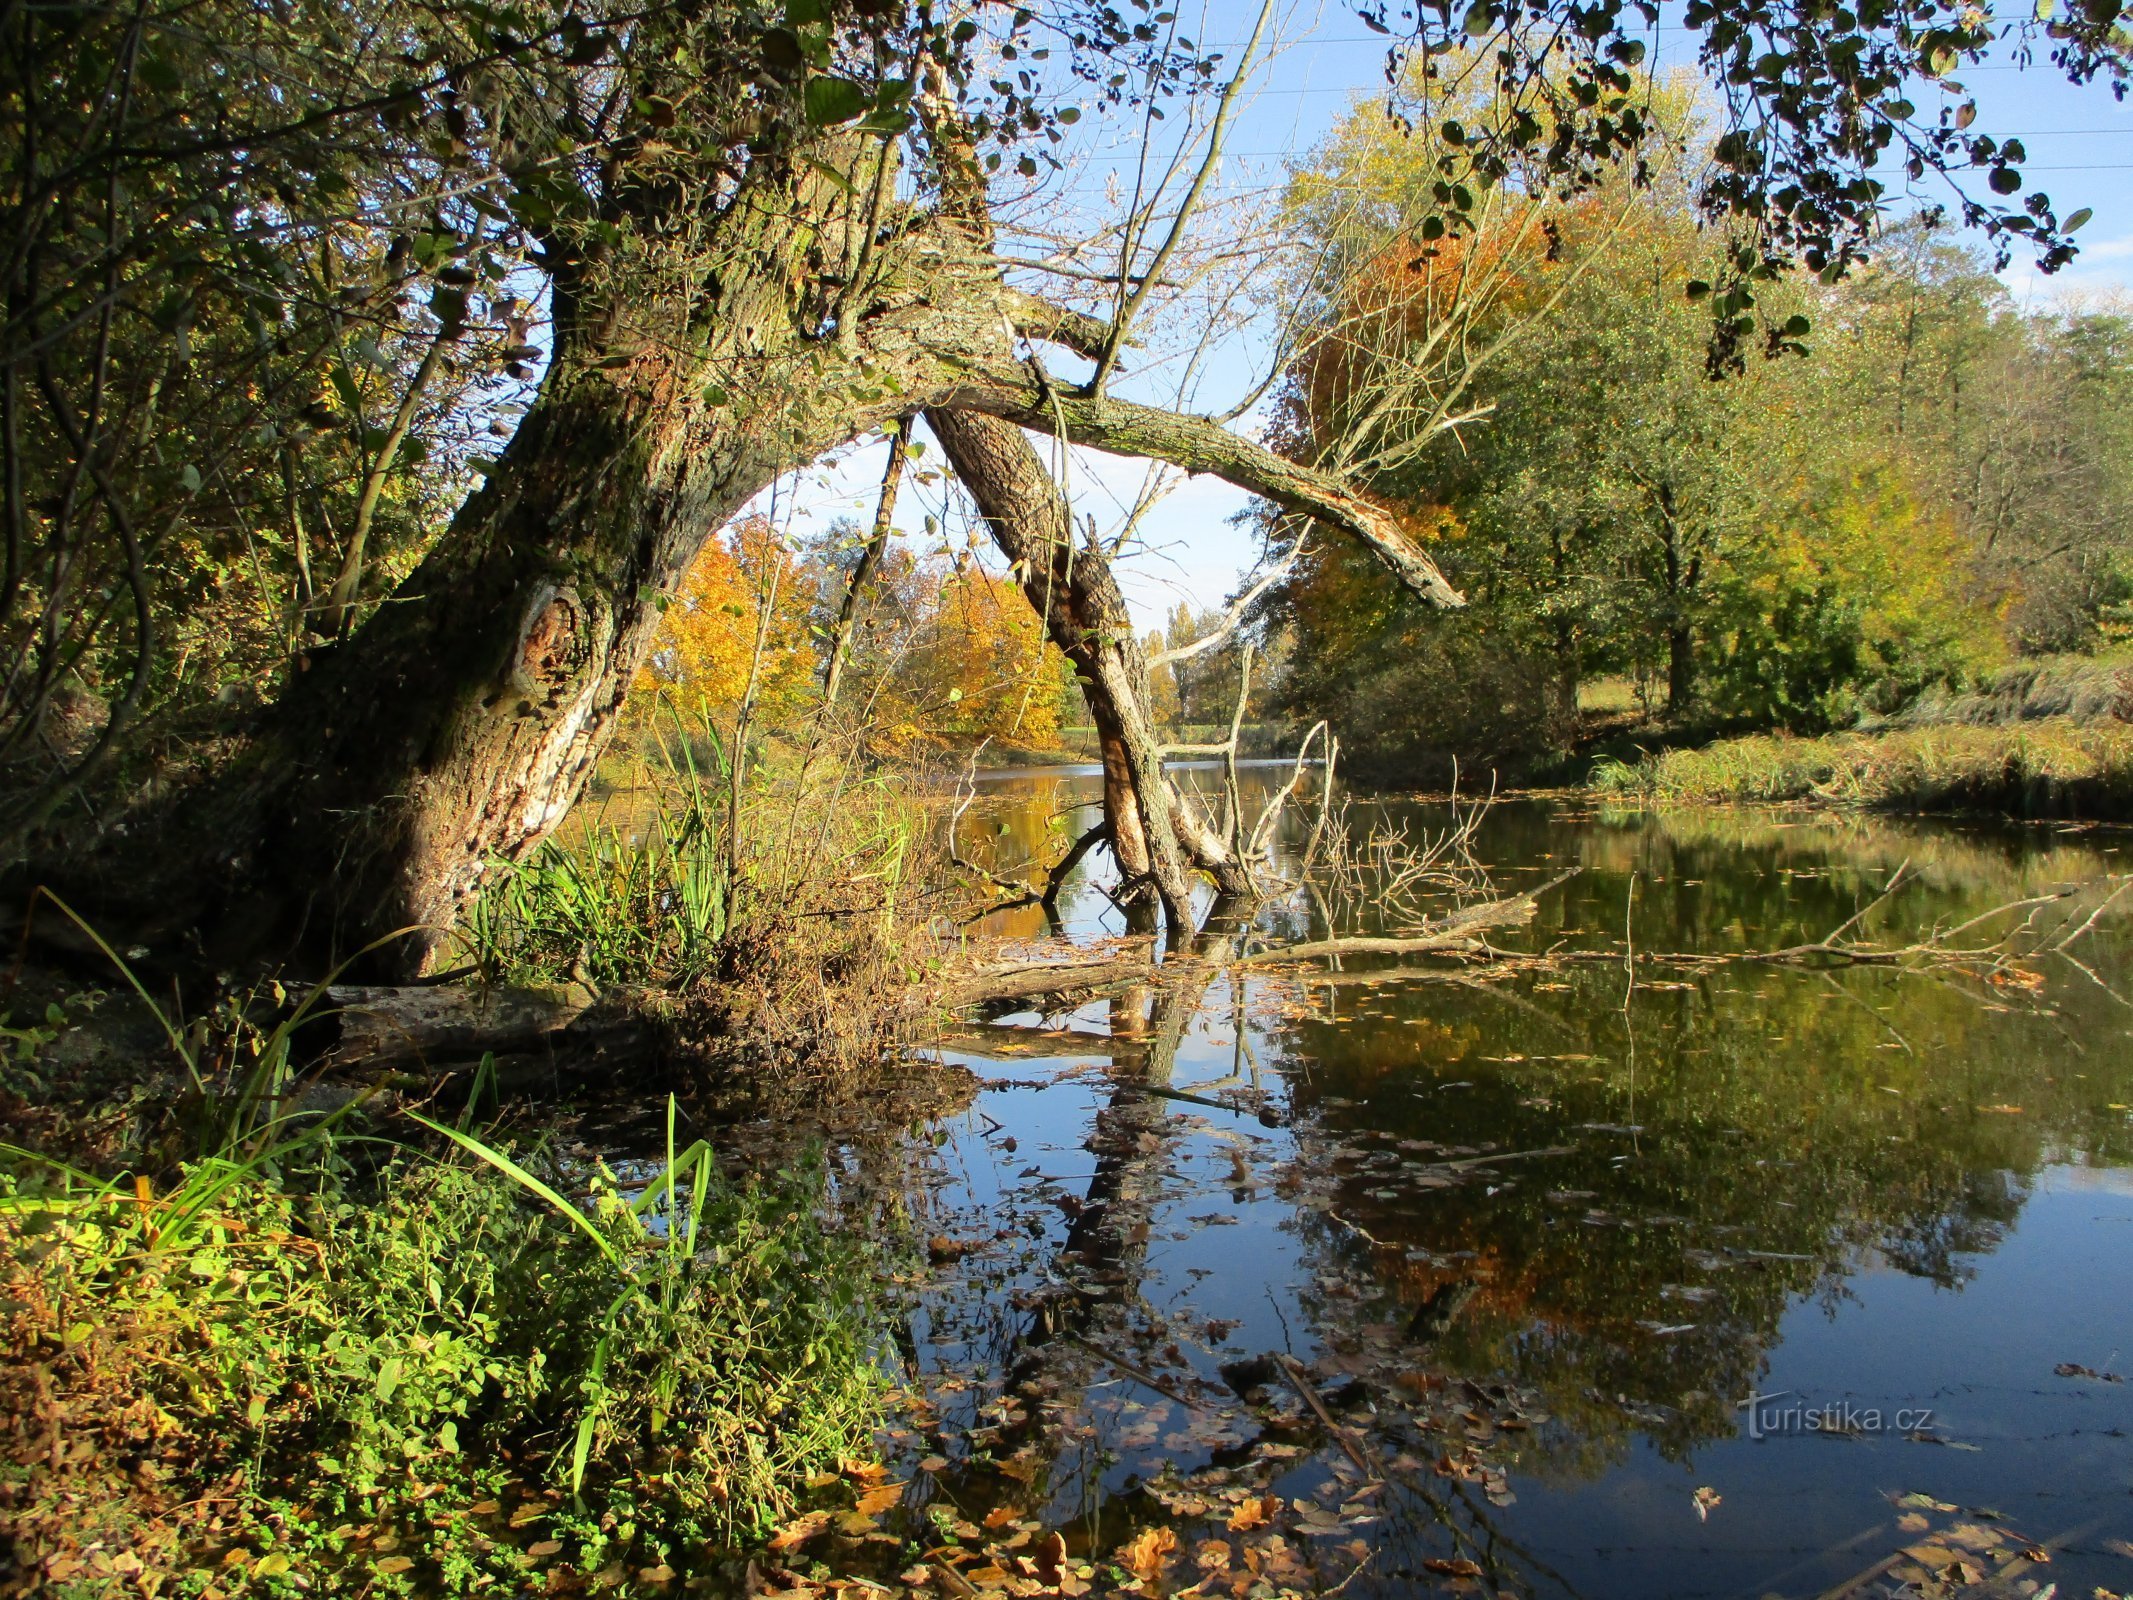 Parské jezero (Hradec Králové, 18.10.2019. svibnja XNUMX.)